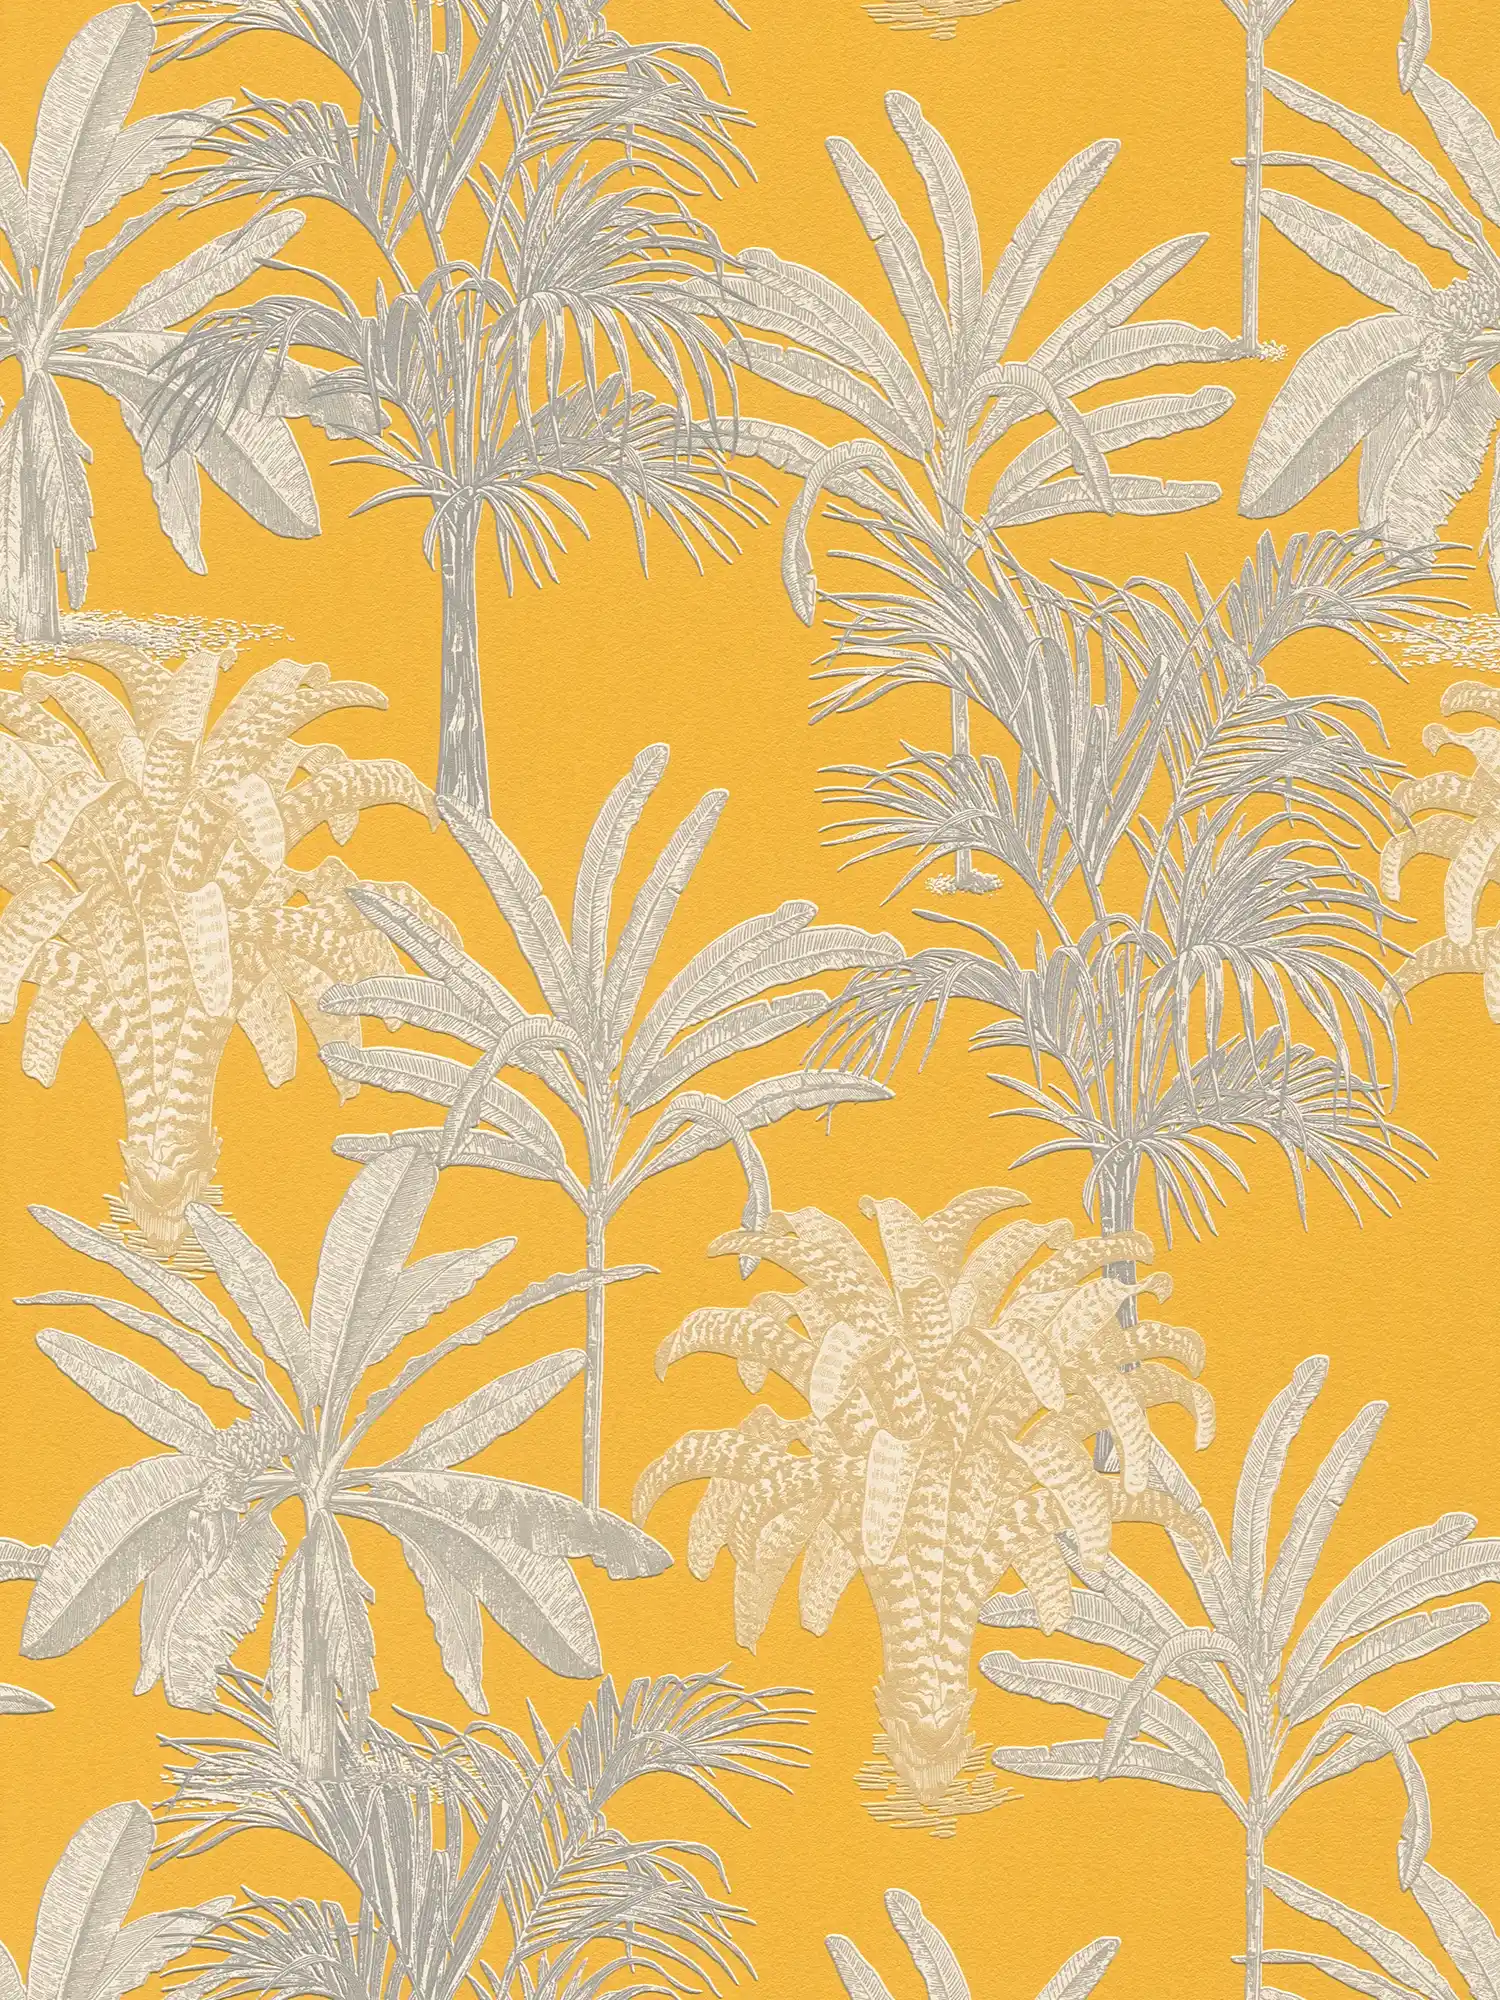 Palm behang mosterdgeel met structuurpatroon - geel, grijs
